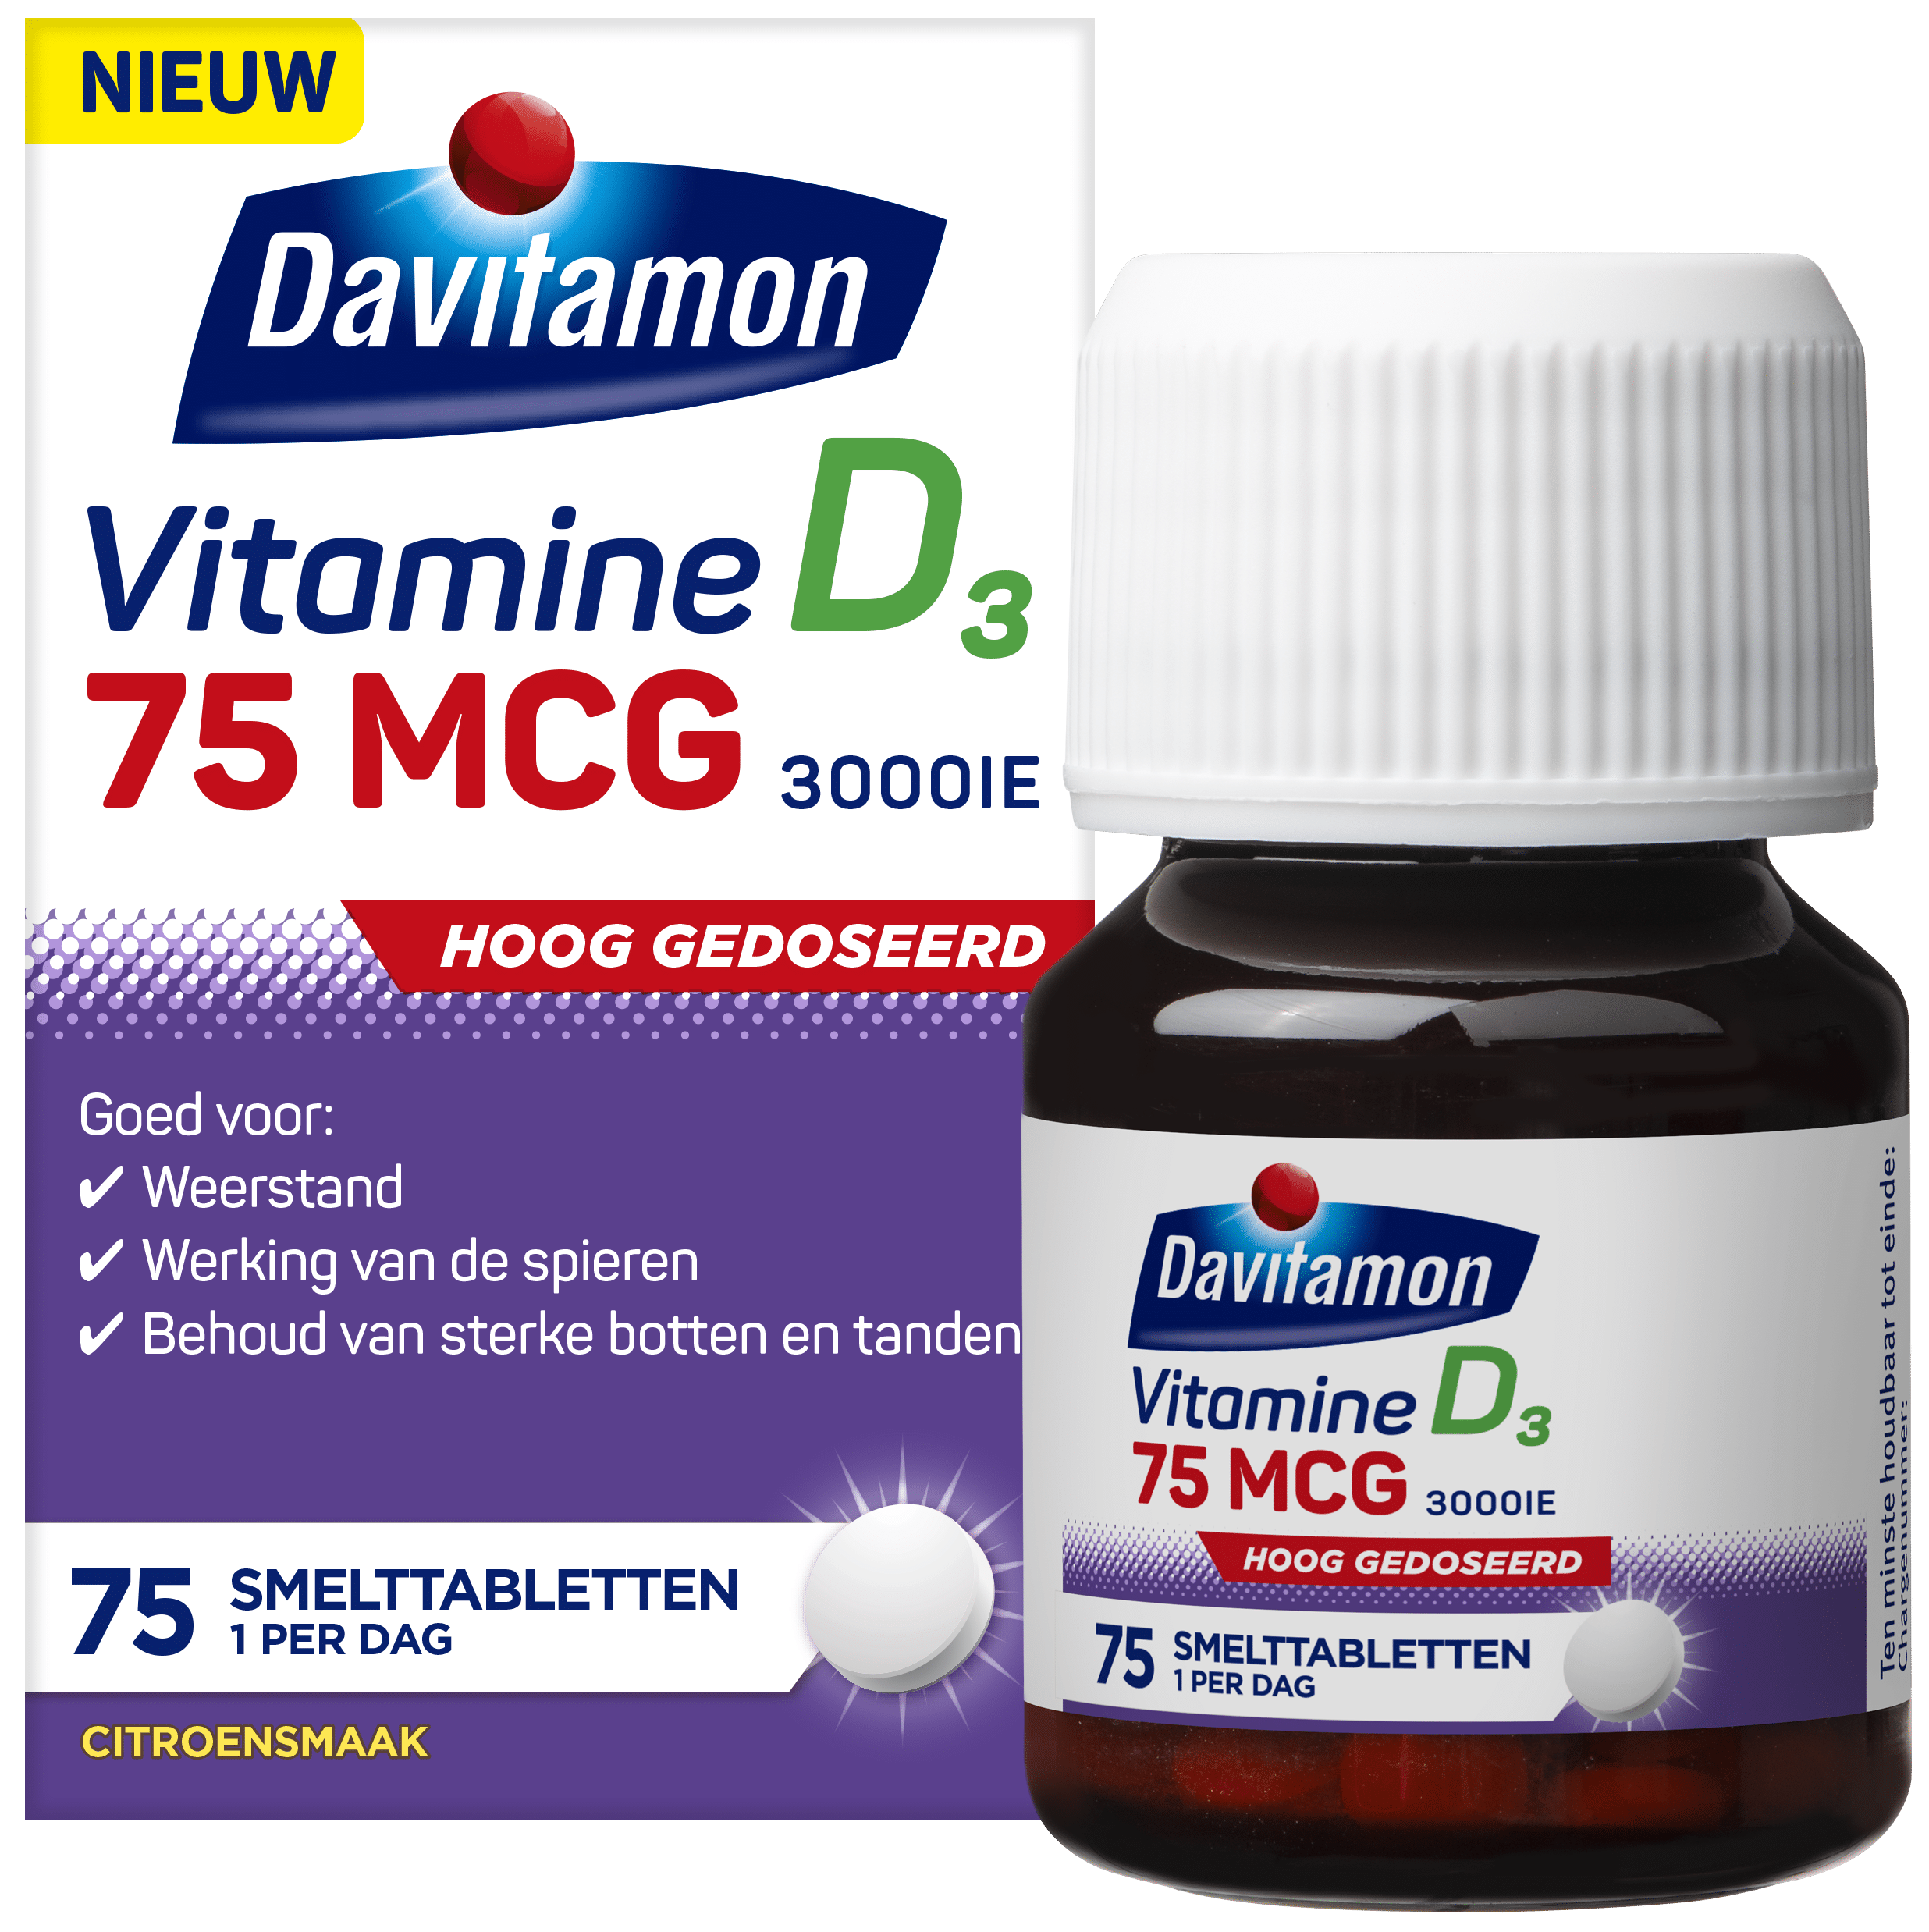 Davitamon Vitamine D3 Hoog gedoseerd – 75 smelttabletten